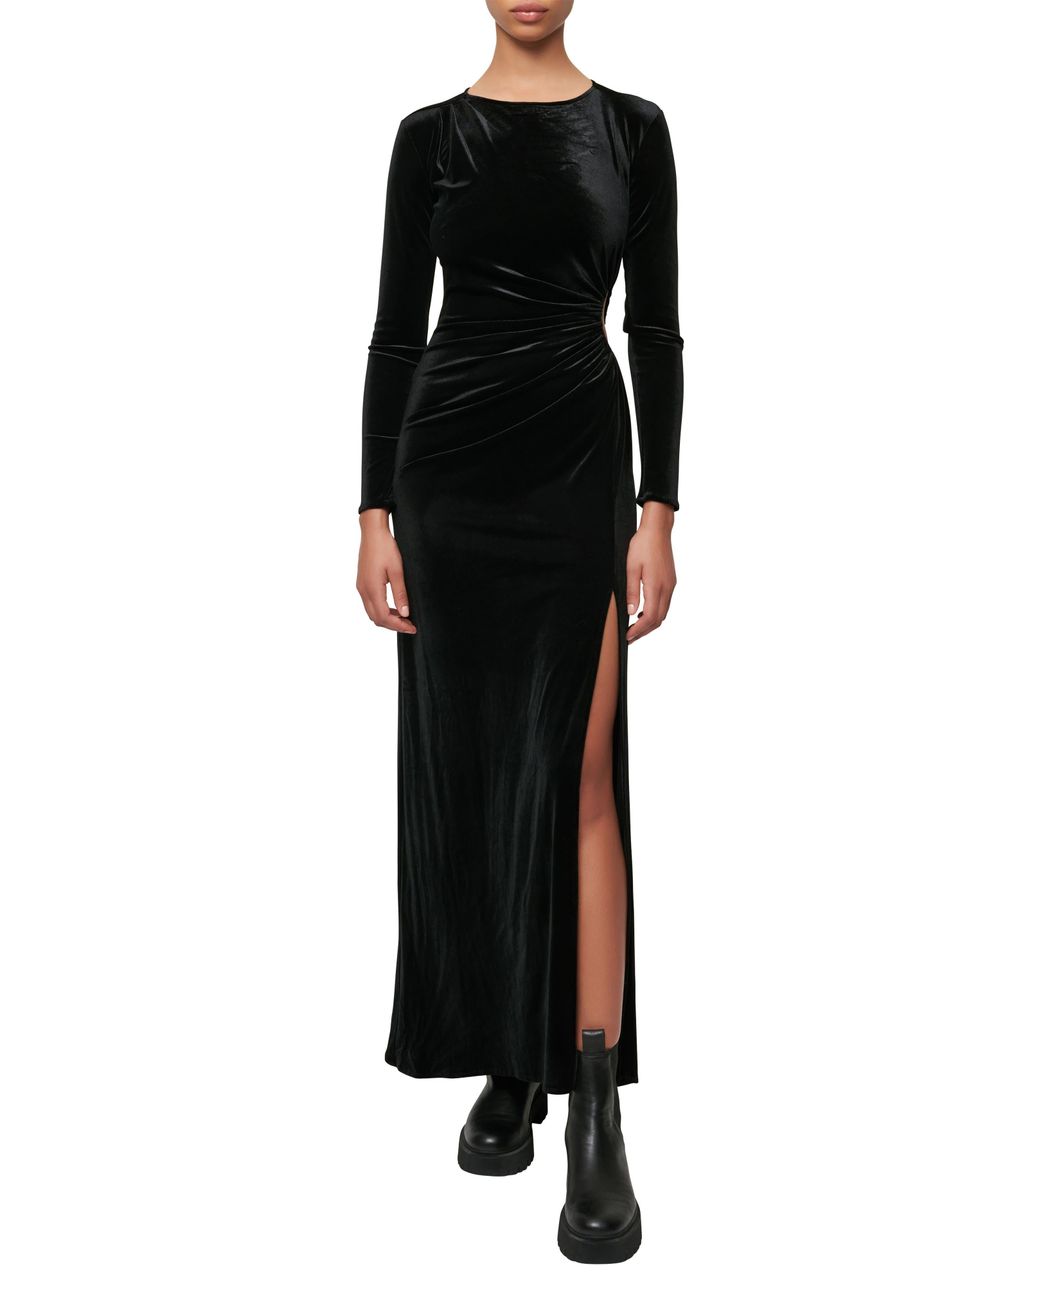 Maje Rilexa Long Sleeve Cutout Dress in Black | Lyst